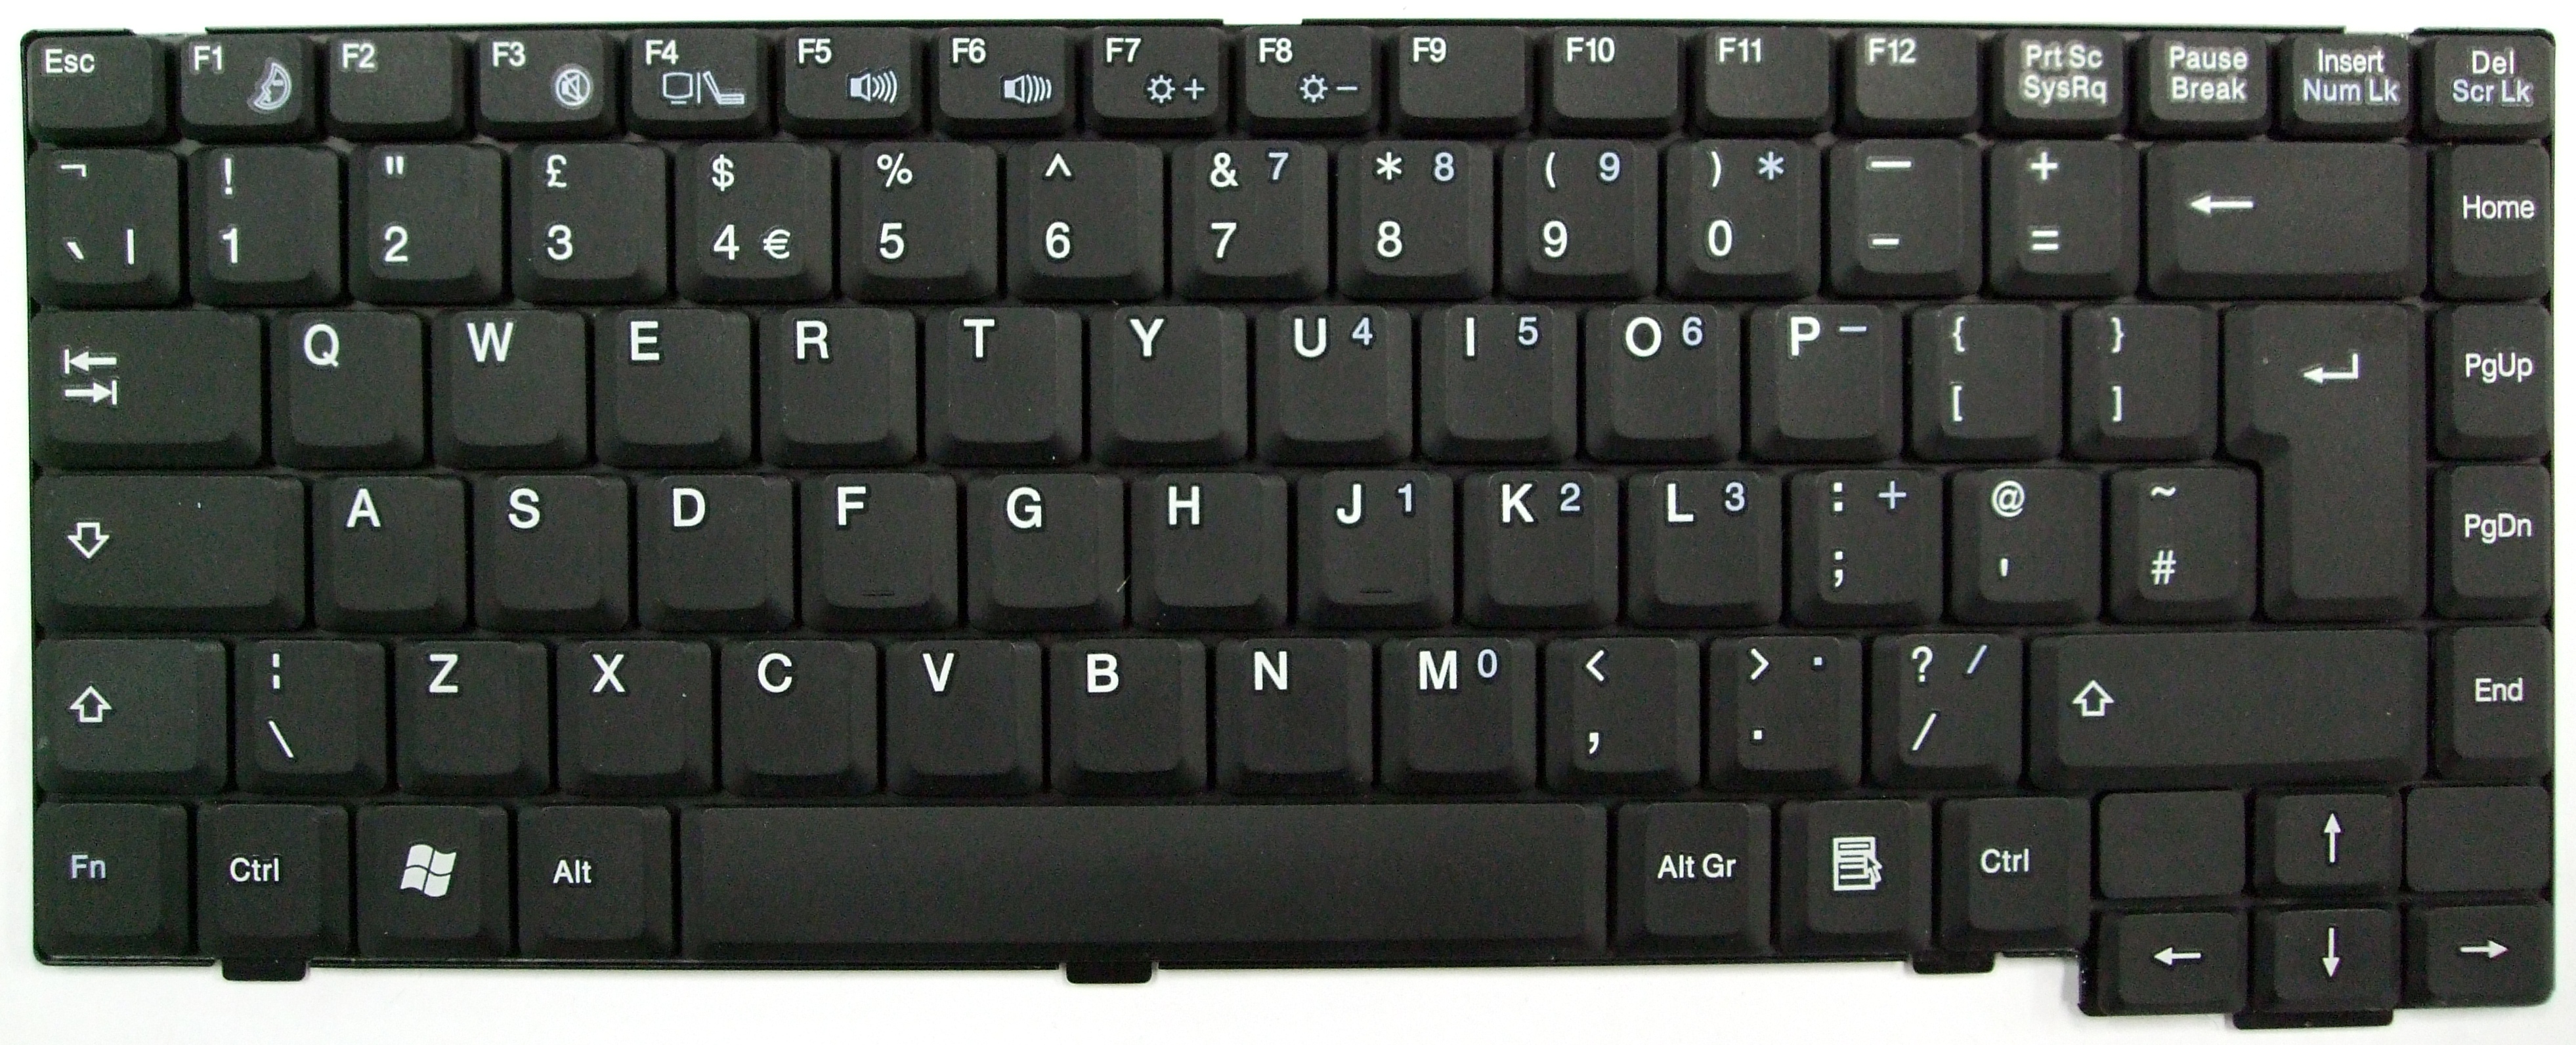 кнопка фото экрана на клавиатуре